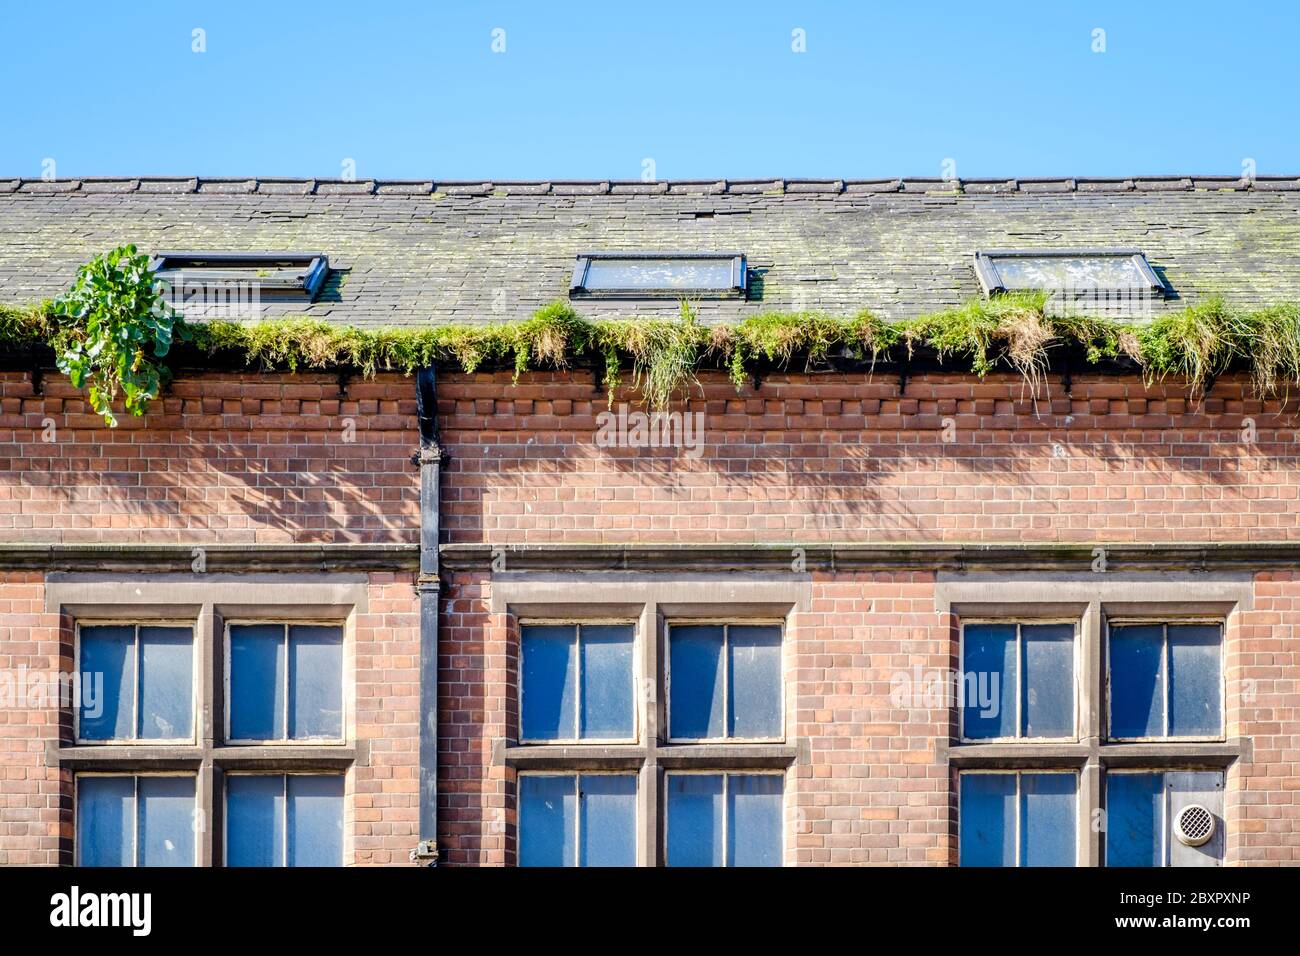 Gras und Pflanzen wachsen in der Dachrinne eines Gebäudes, Nottingham, England, Großbritannien Stockfoto